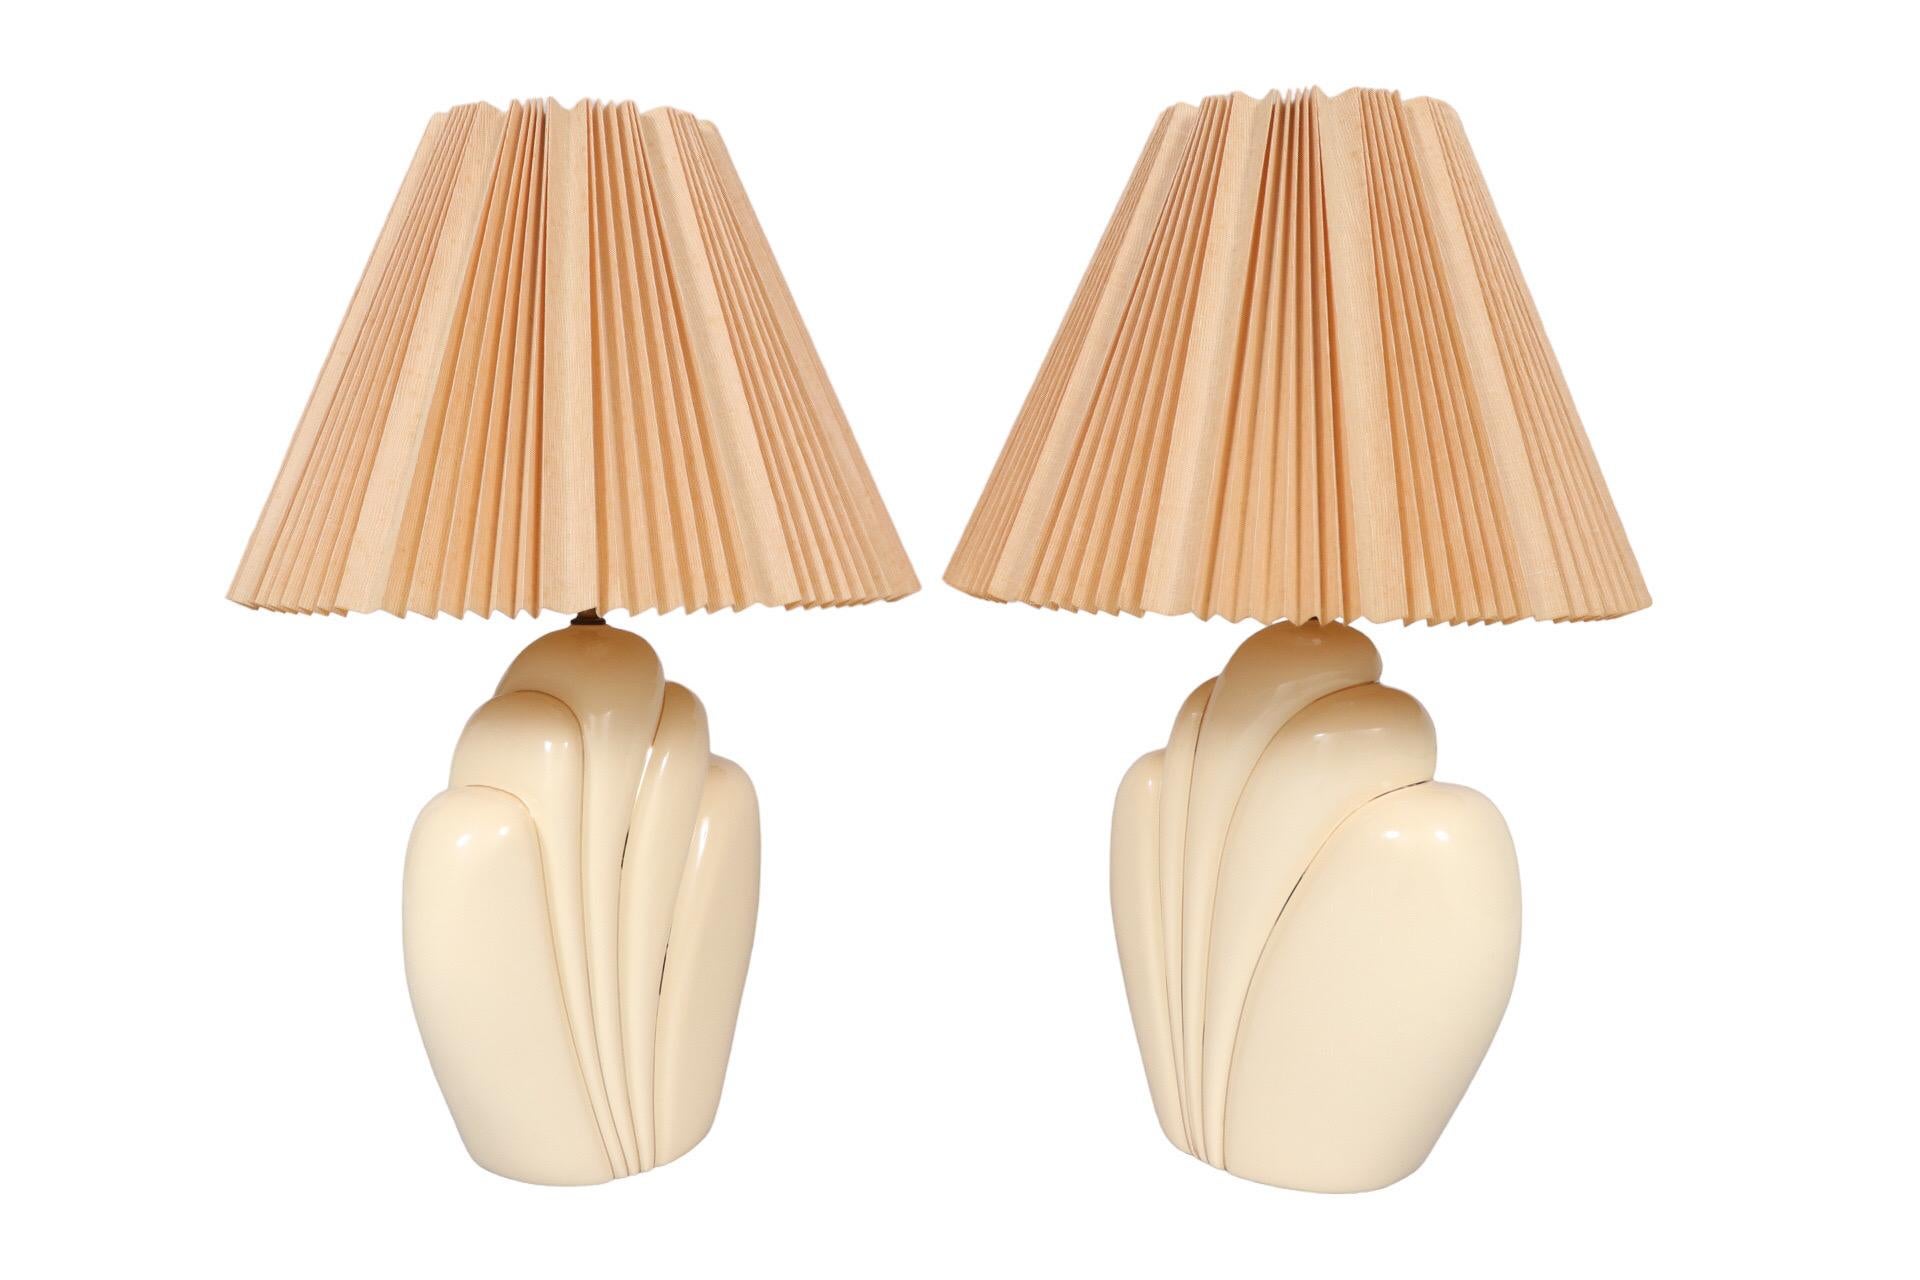 Paire de lampes de table sculpturales en céramique de couleur crème. Les vases ont la forme de panaches de plumes bordés de lignes dorées. Les lampes sont surmontées d'un abat-jour empire plissé de couleur pêche et d'un épi de faîtage en bois. Câblé